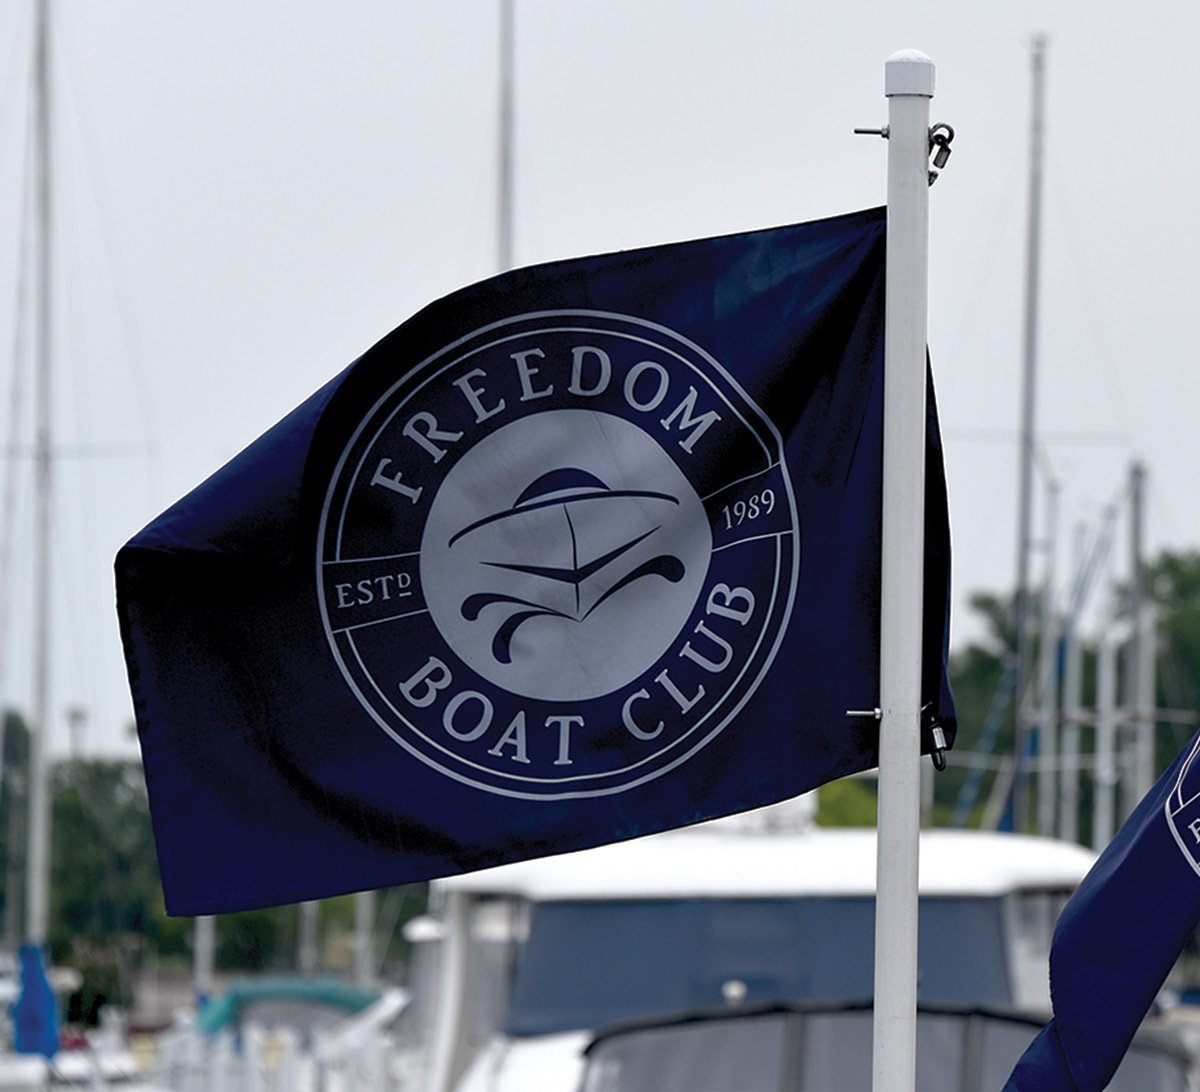 Freedom Boat Club flag